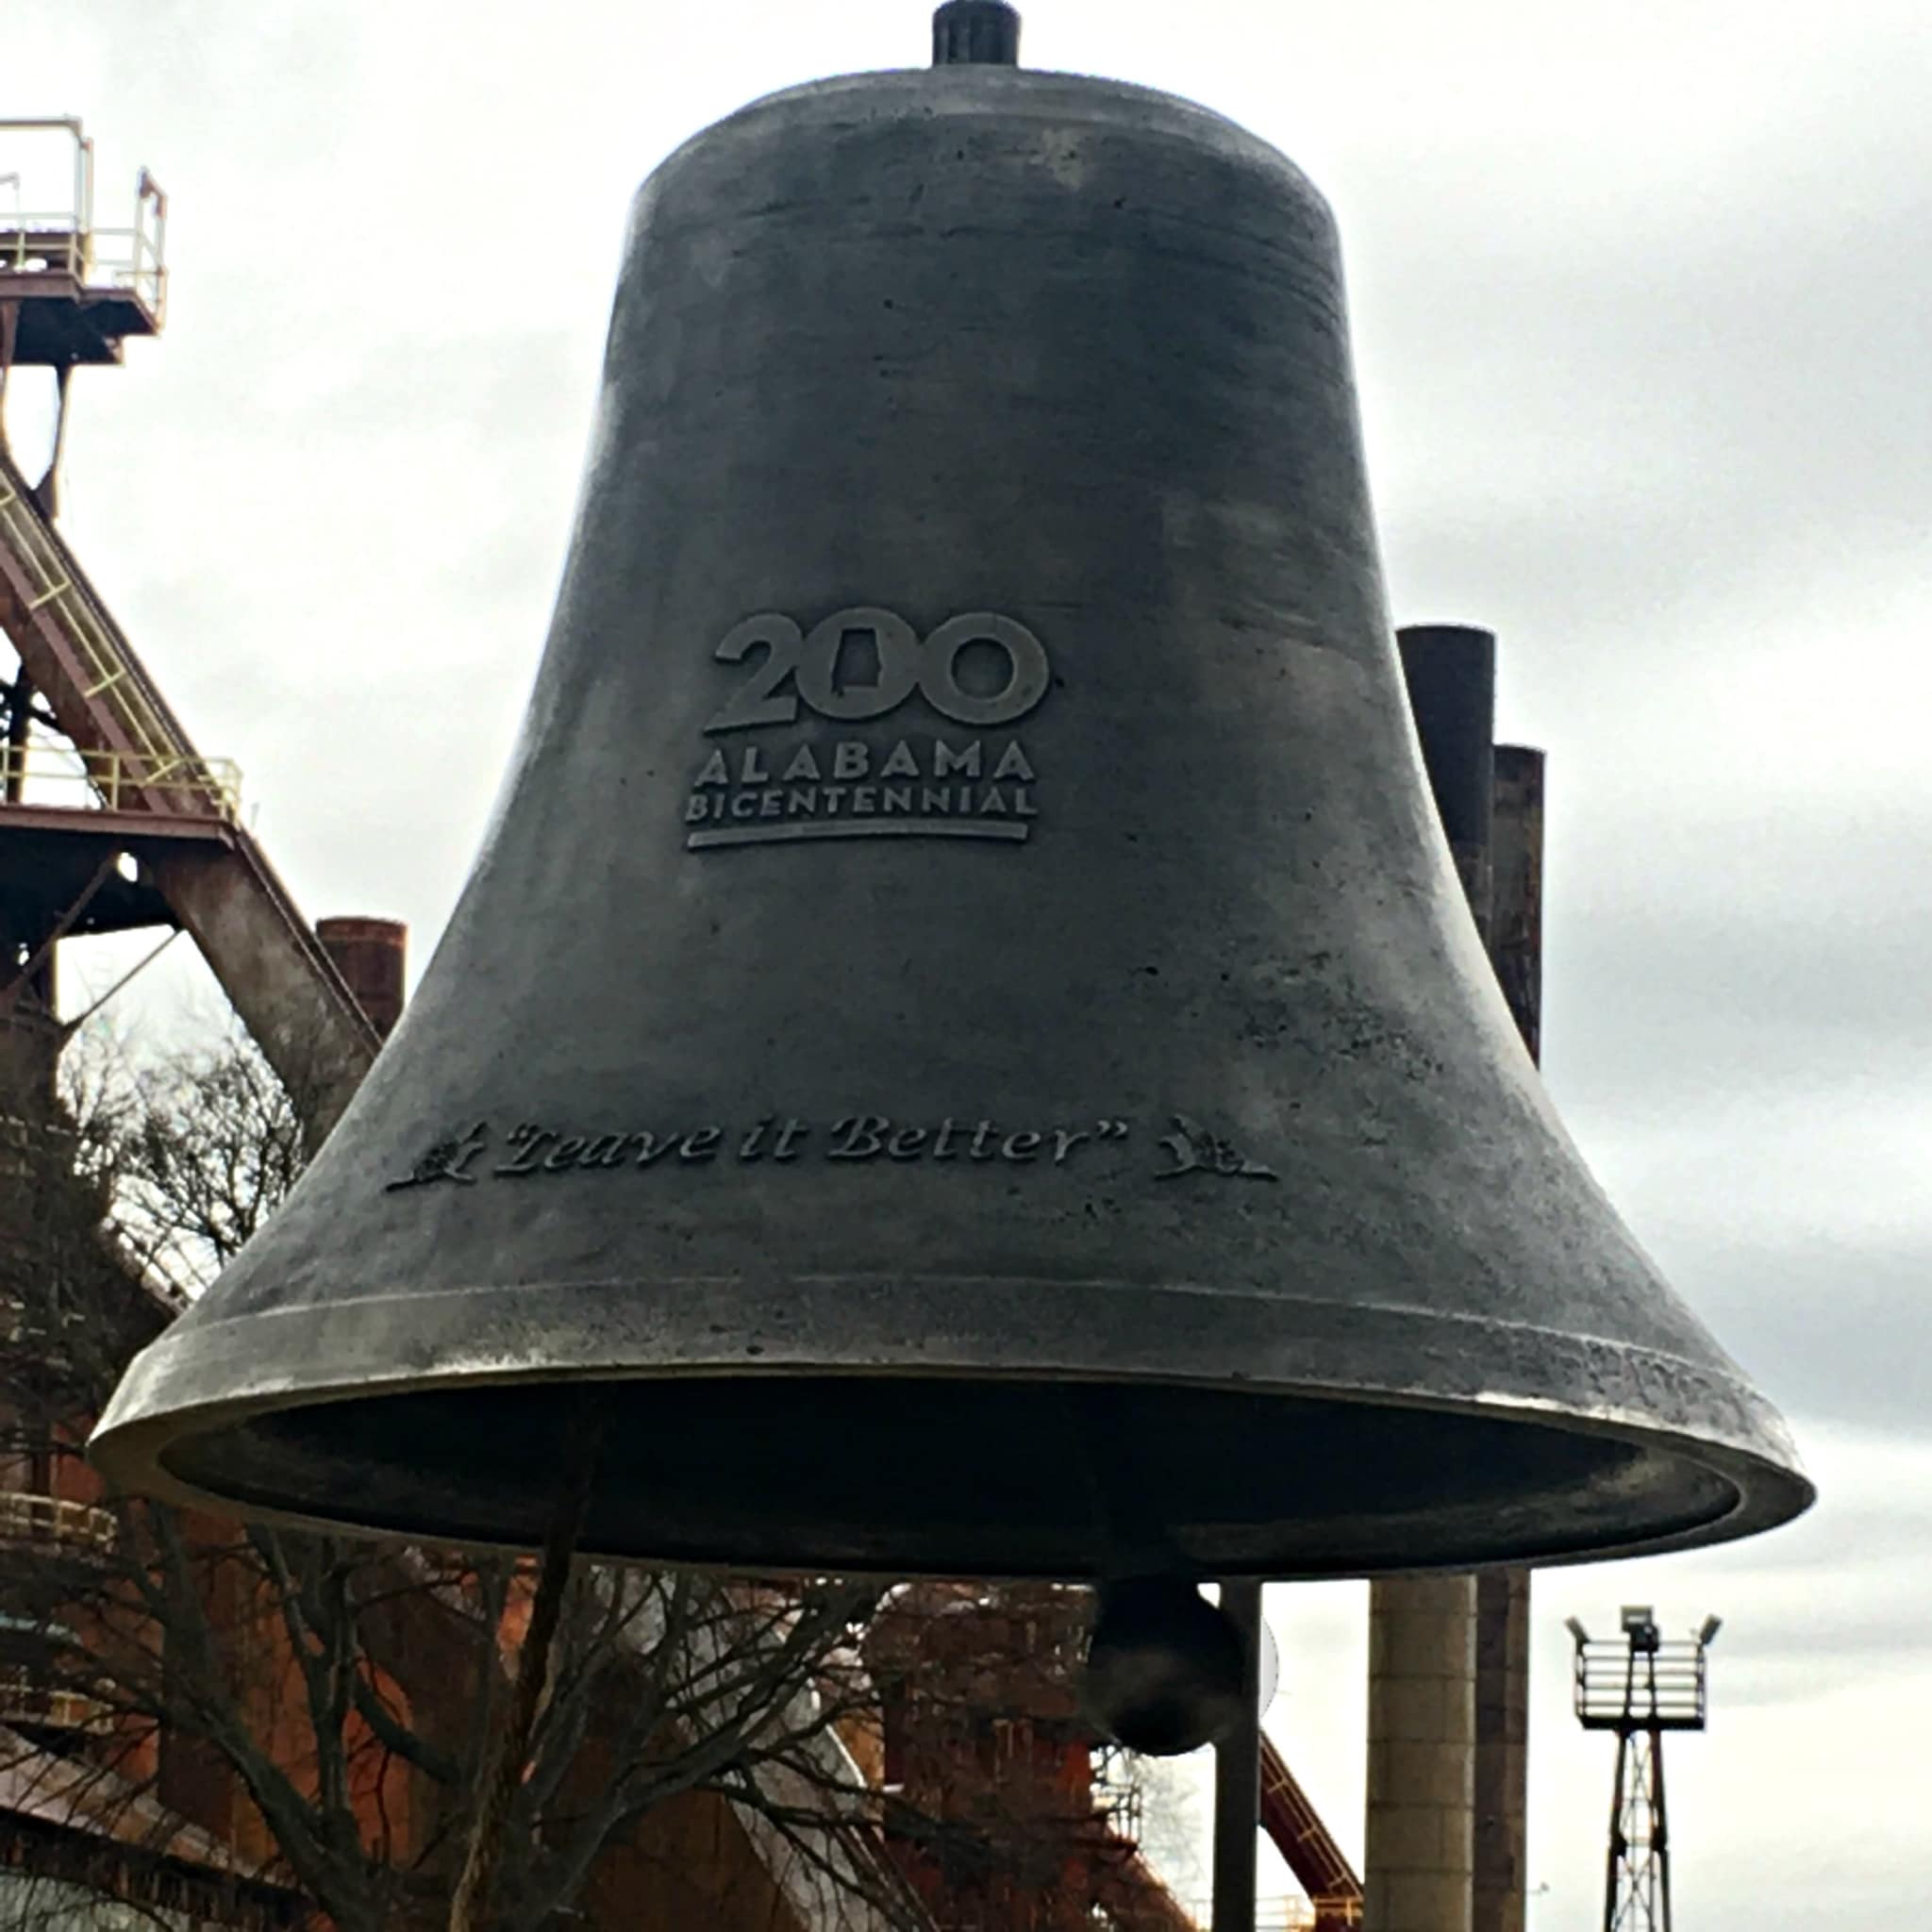 The New Alabama Bicentennial Children's Bell